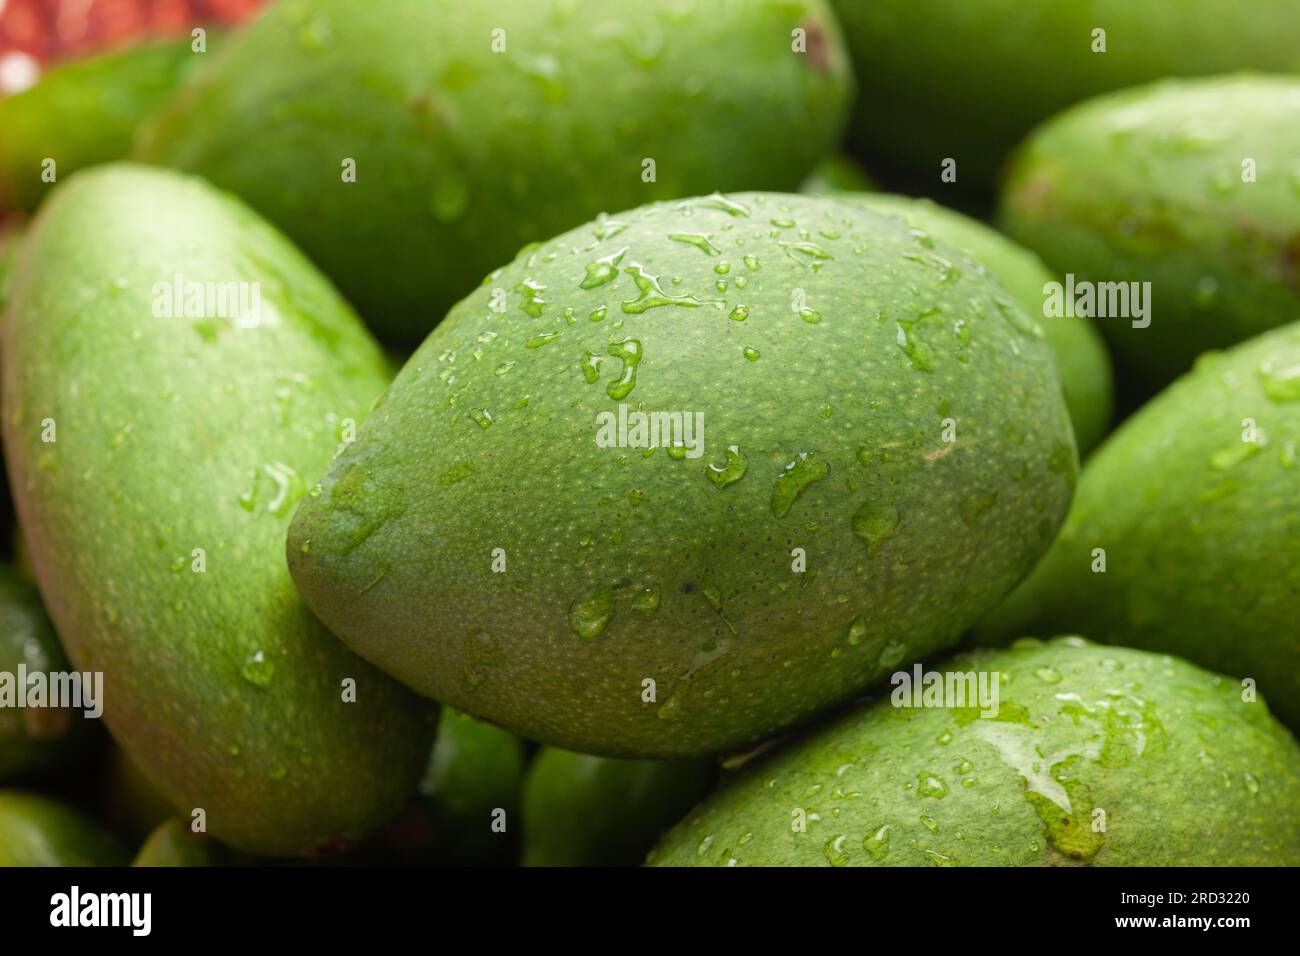 Collezione di manghi indiani verdi biologici (Mangifera indica) Foto Stock